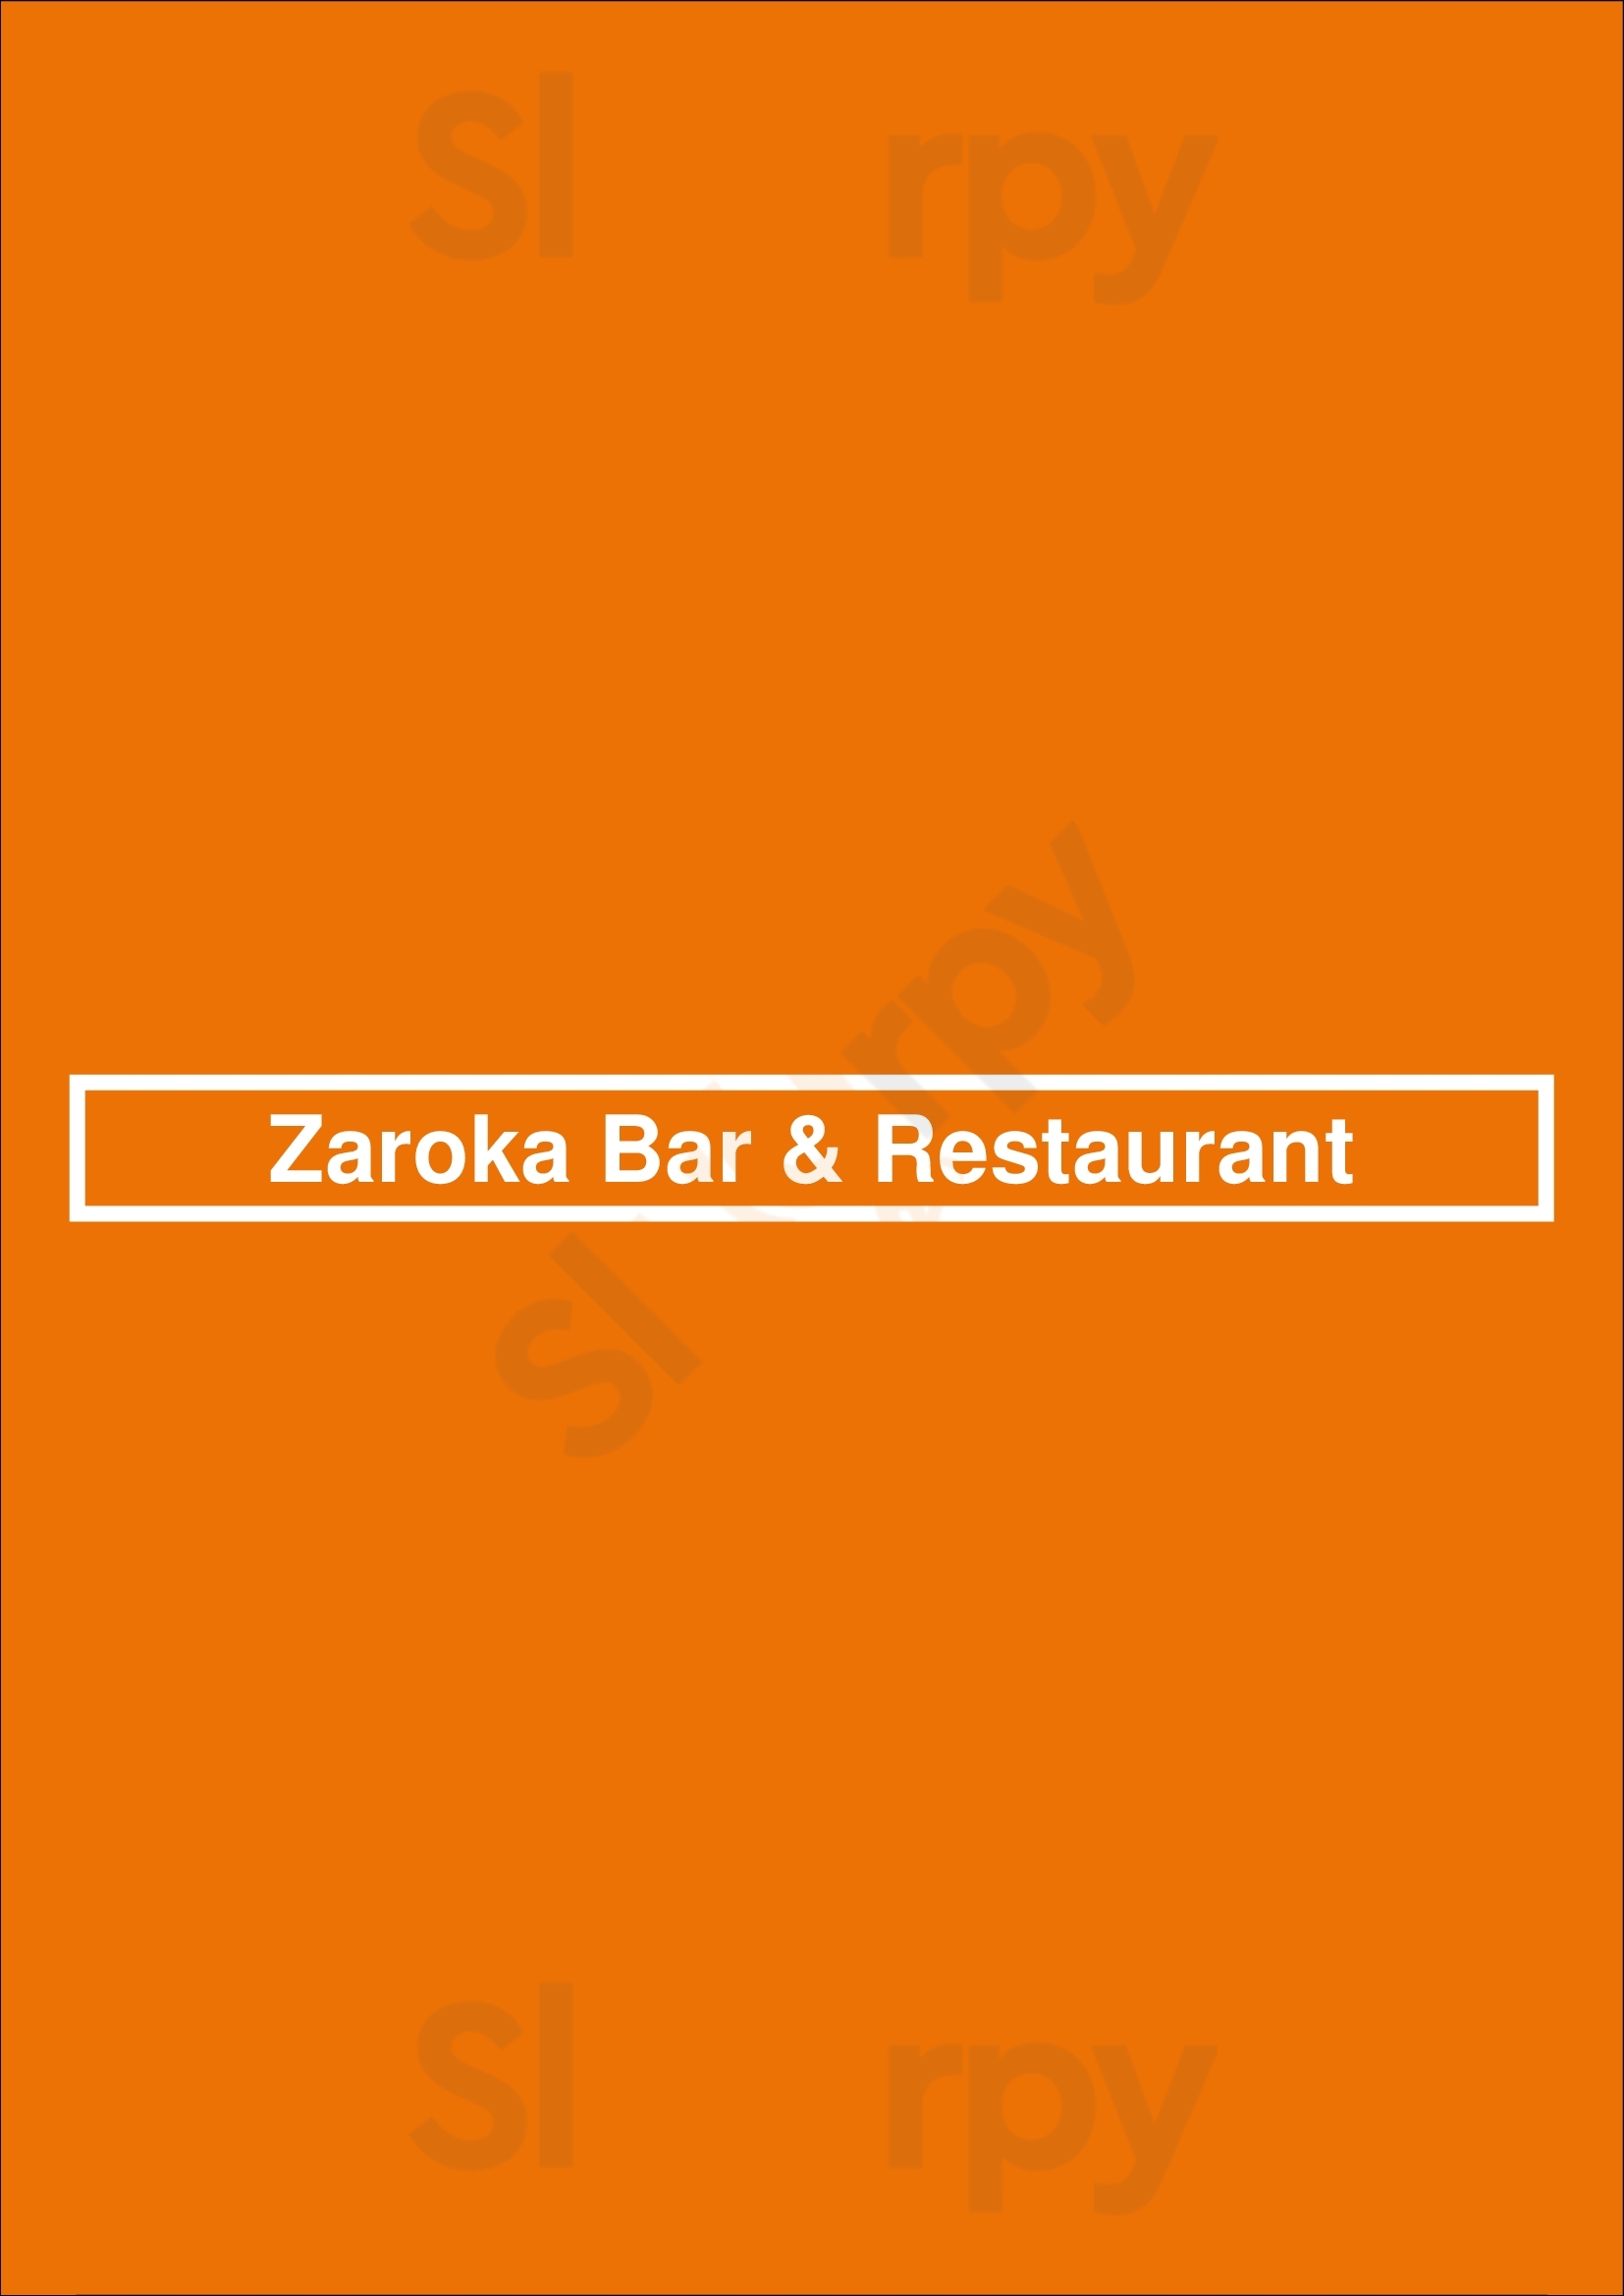 Zaroka Bar & Grill New Haven Menu - 1